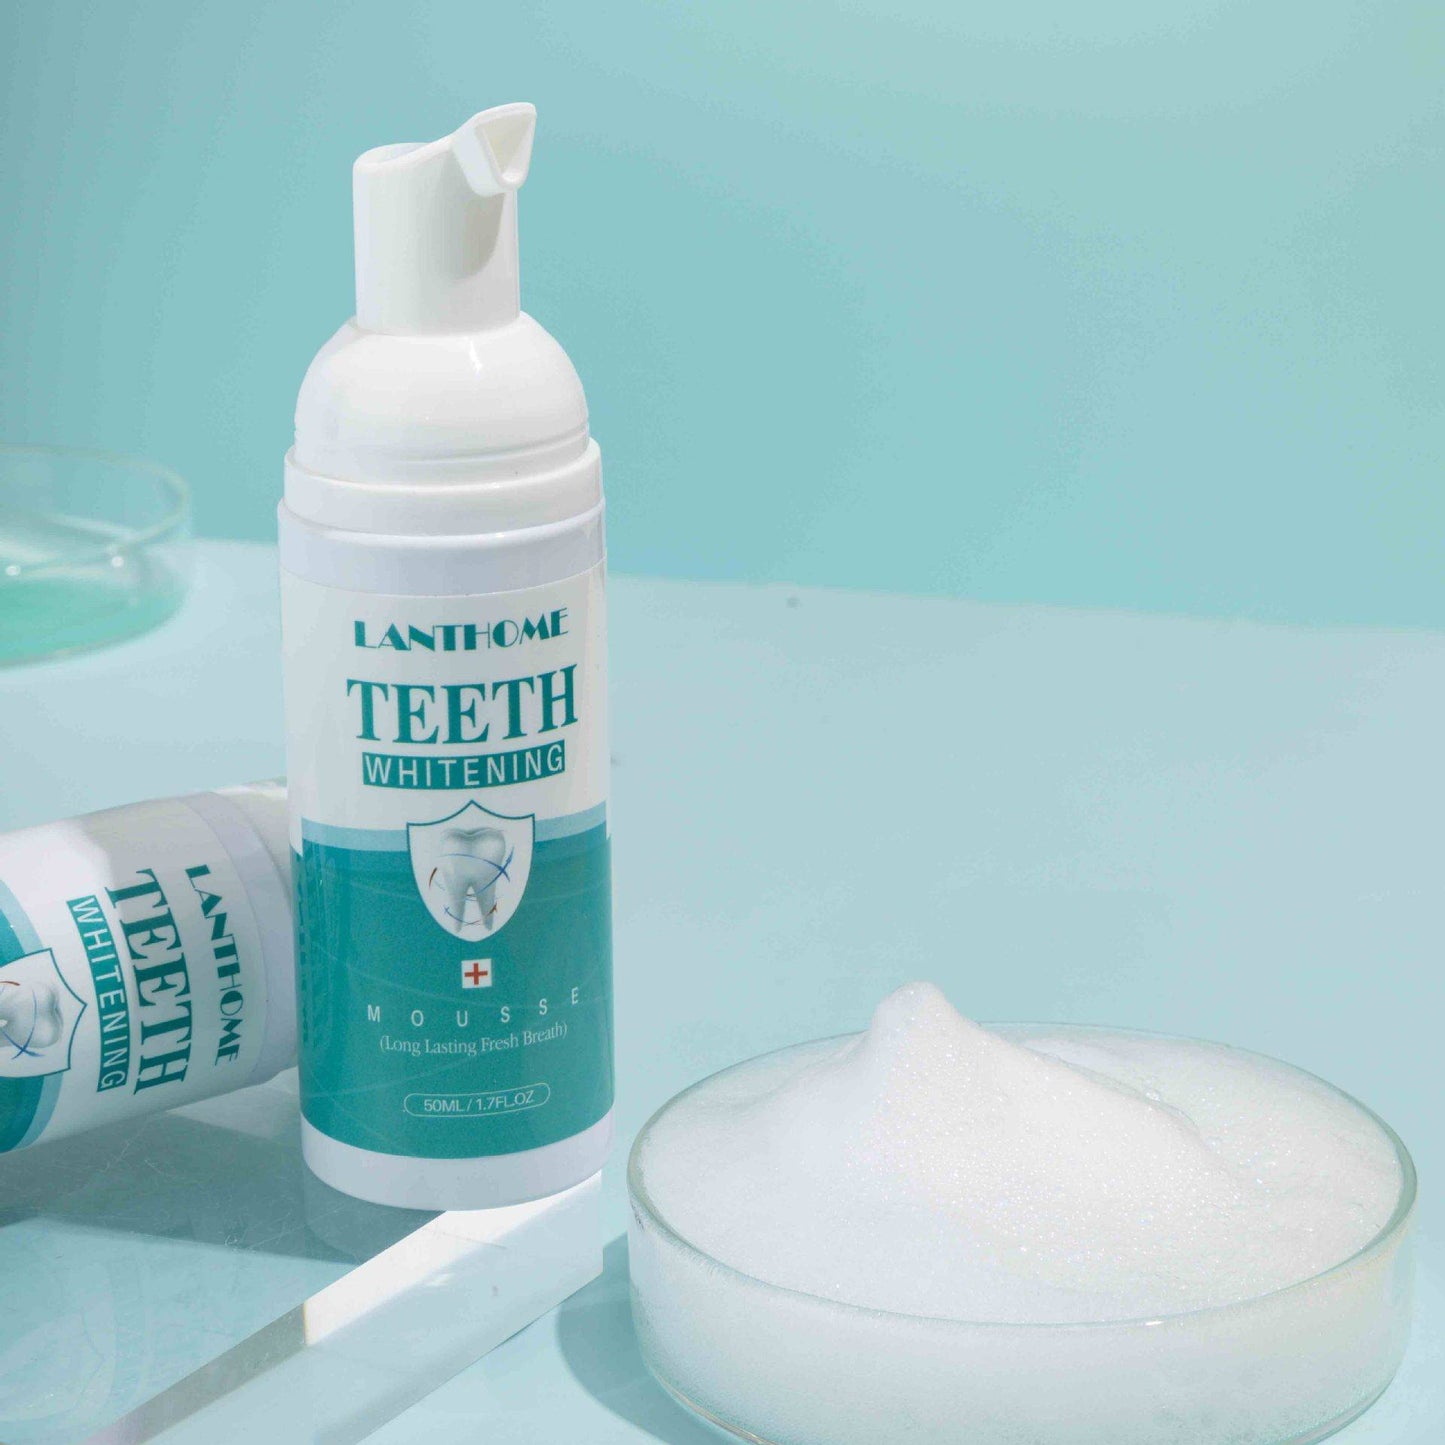 Teeth whitening foam for long-lasting fresh breath